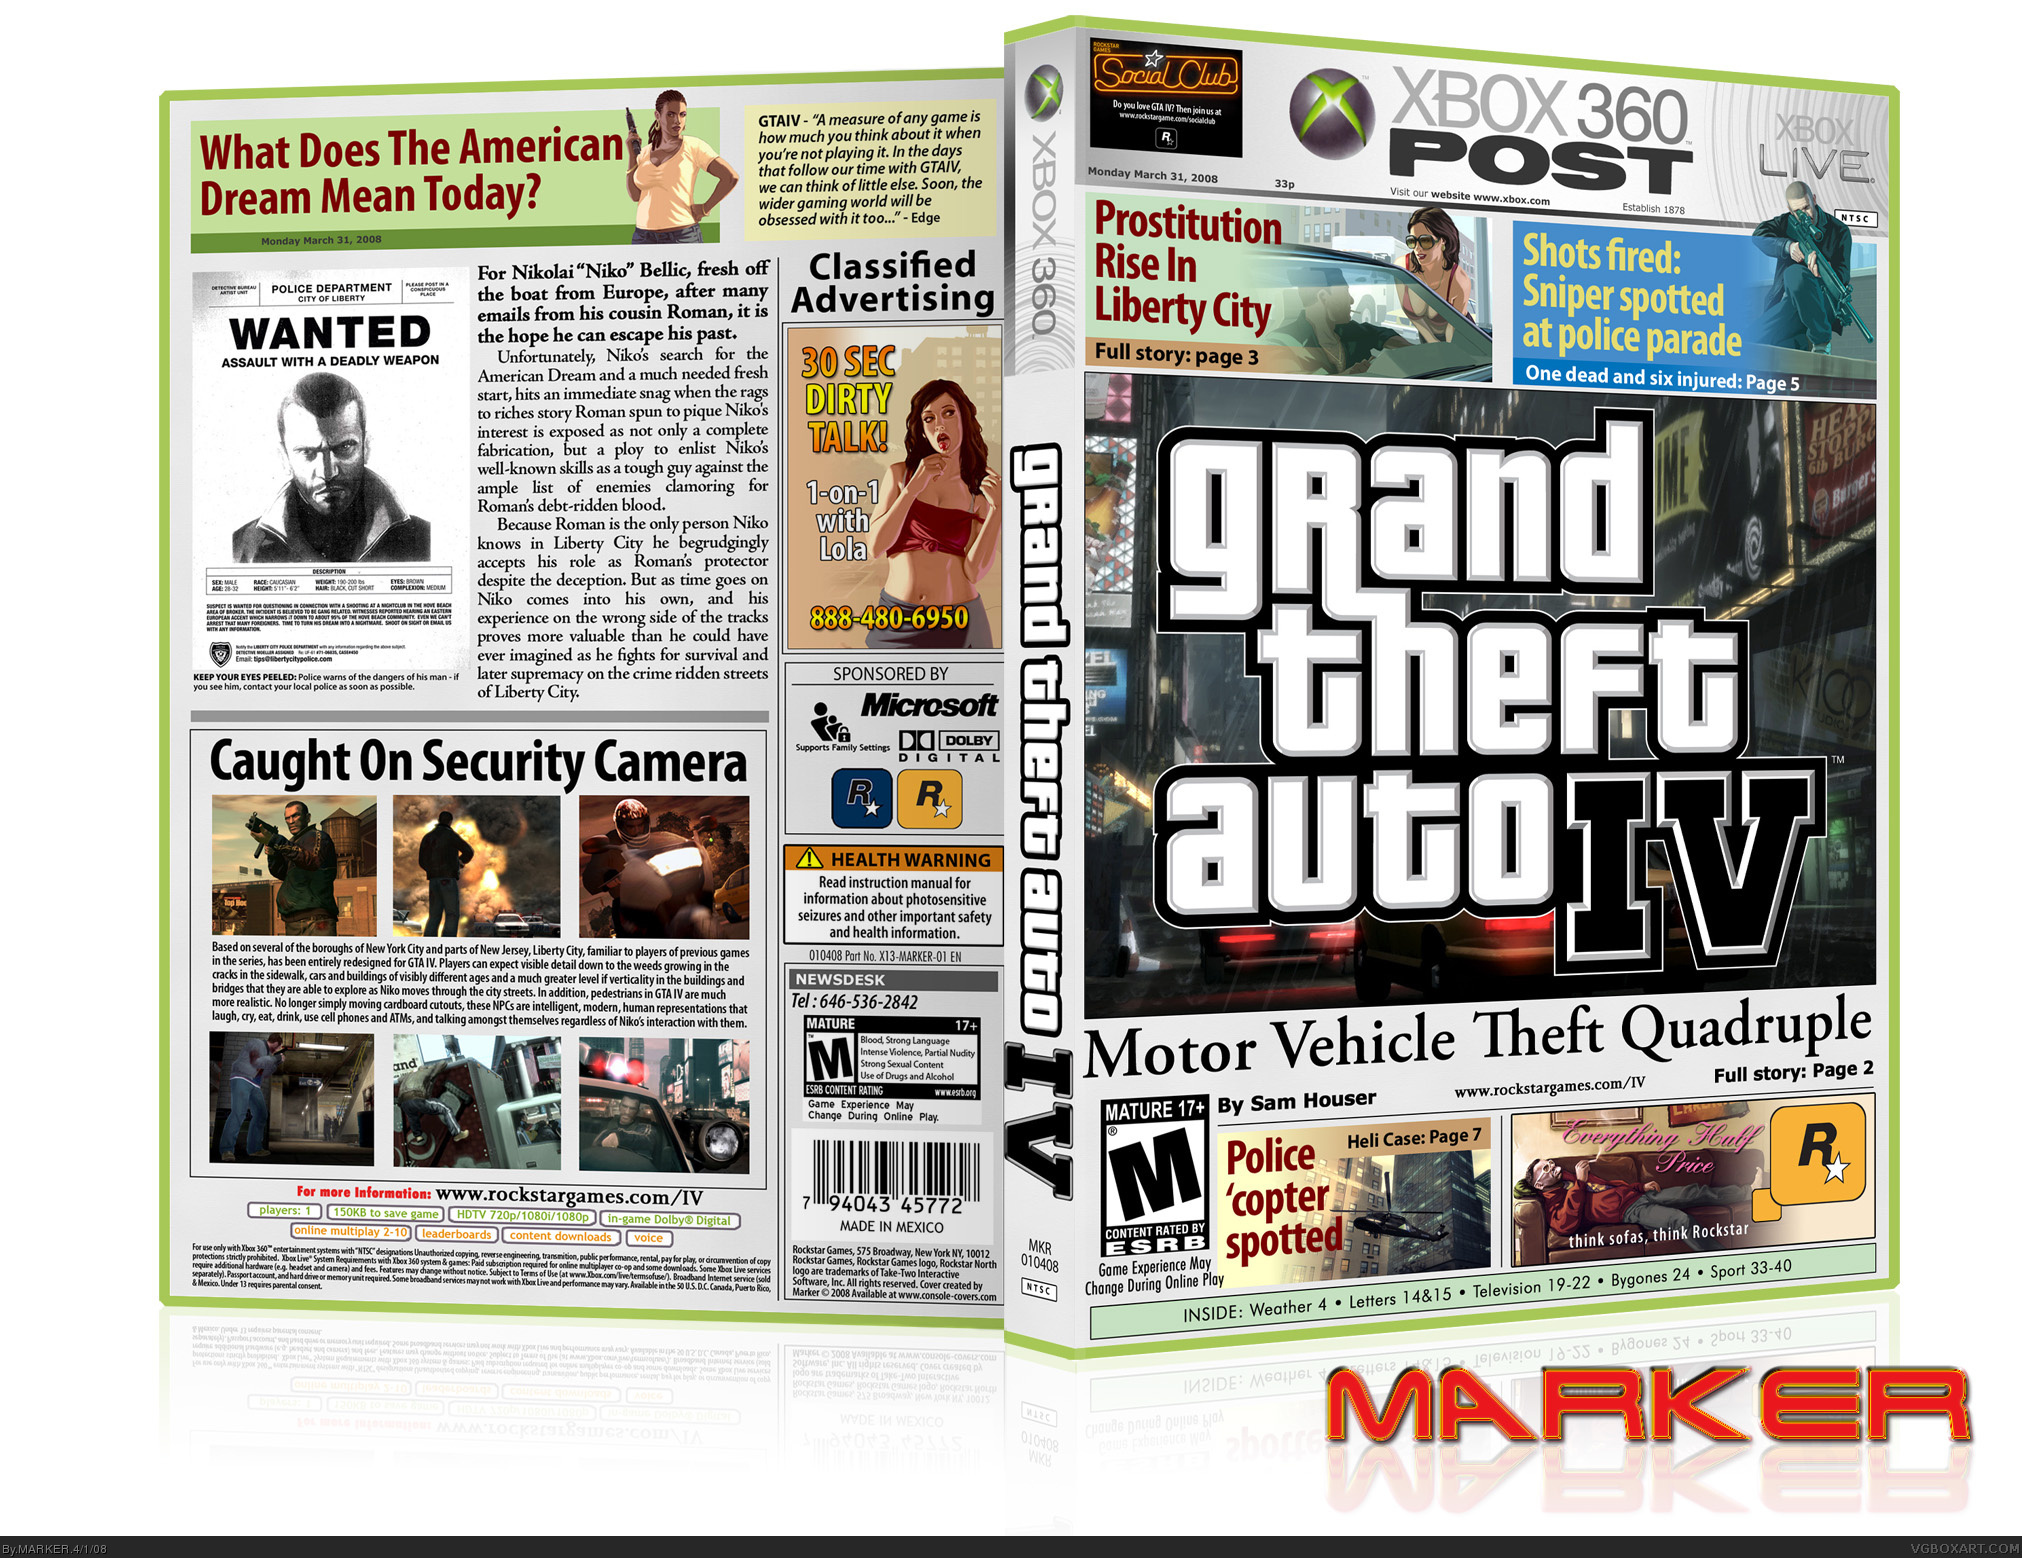 Grand Theft Auto IV box cover